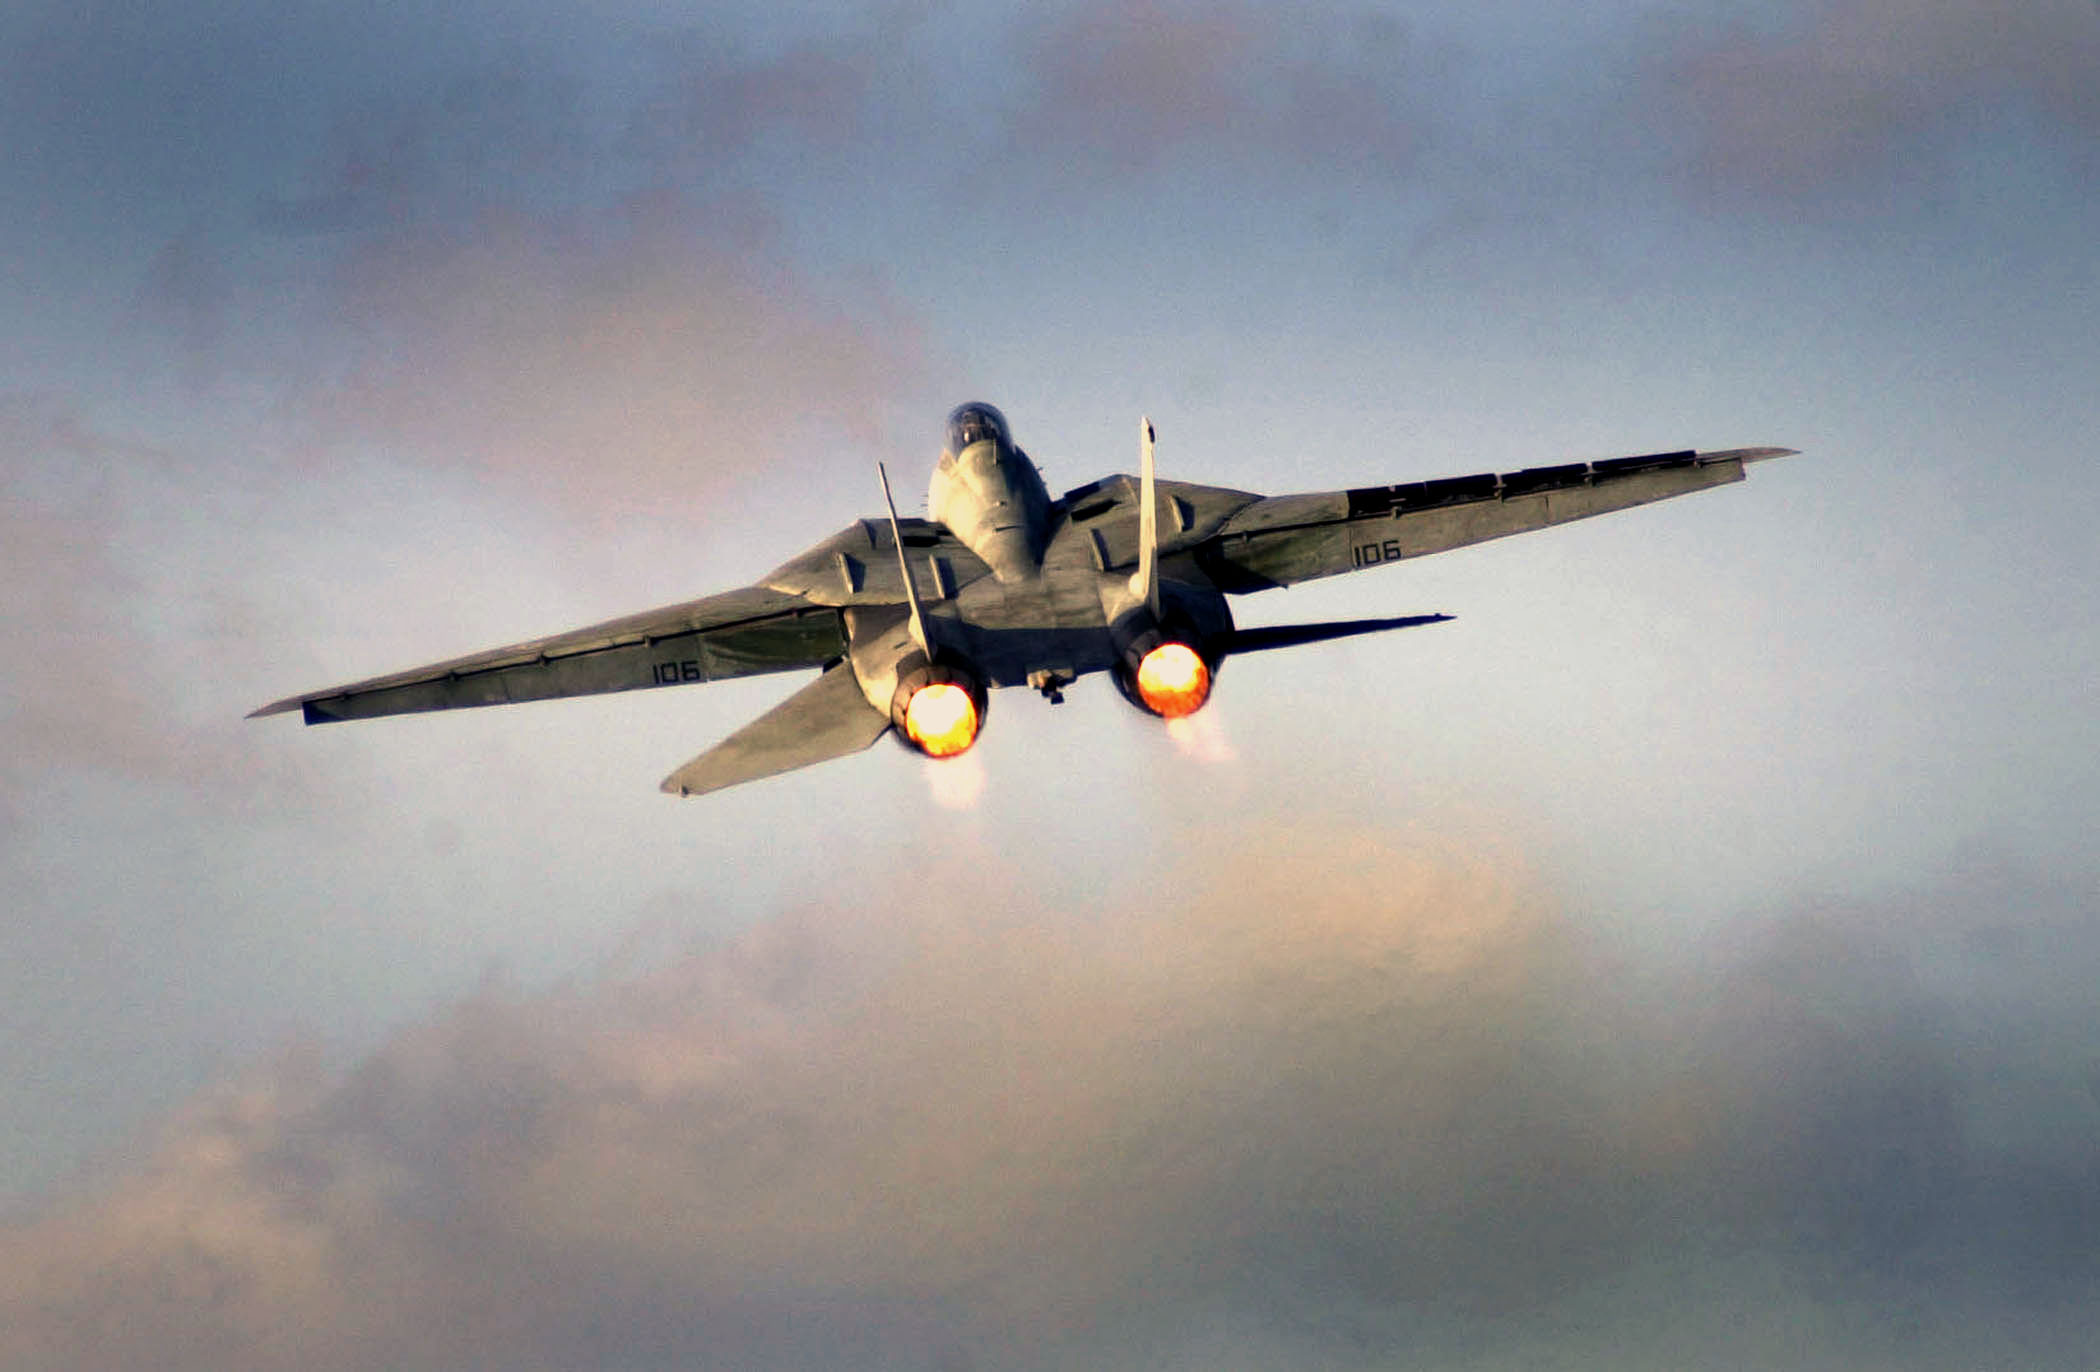 フリー画像 航空機 飛行機 軍用機 戦闘機 F 14トムキャット F 14dtomcat フリー素材 画像素材なら 無料 フリー写真素材のフリーフォト